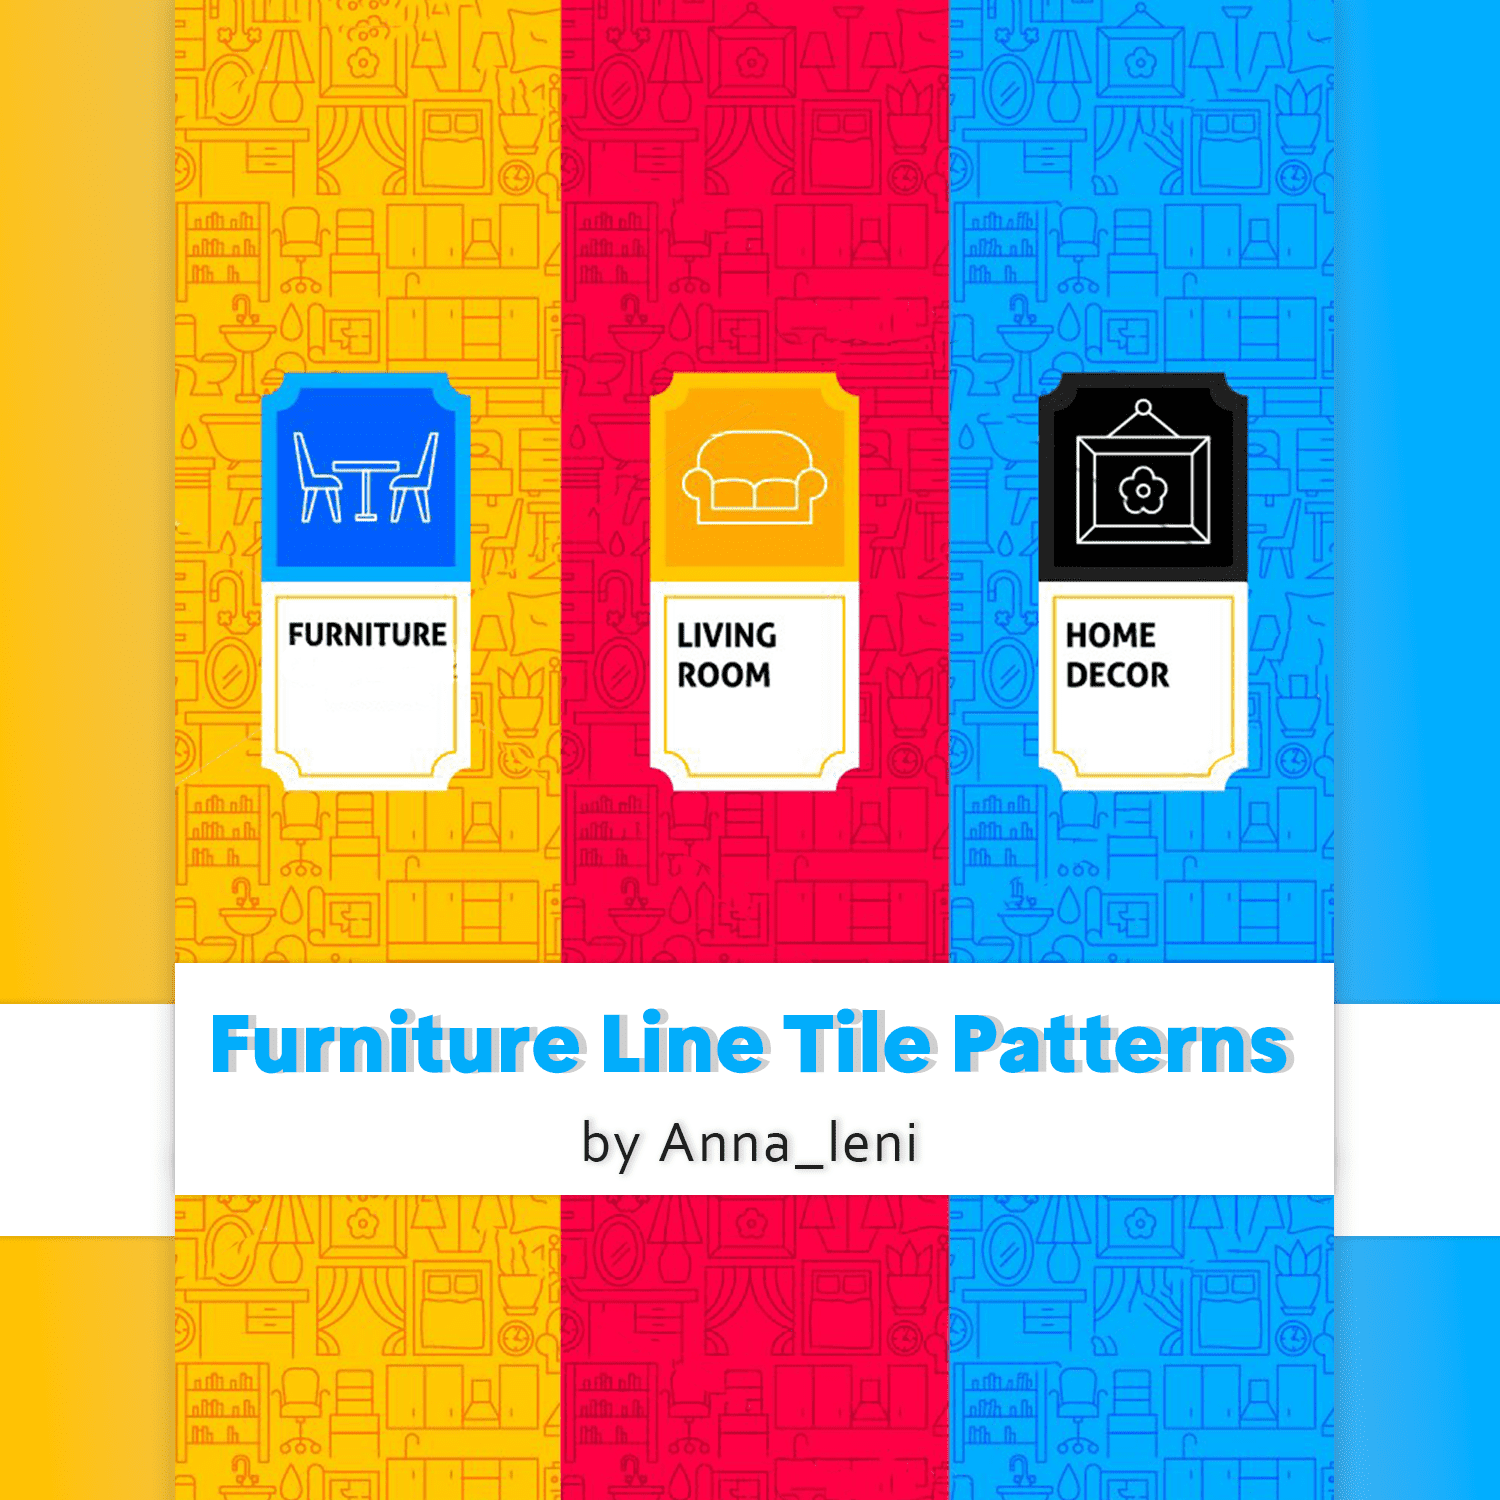 Furniture Line Tile Patterns cover.